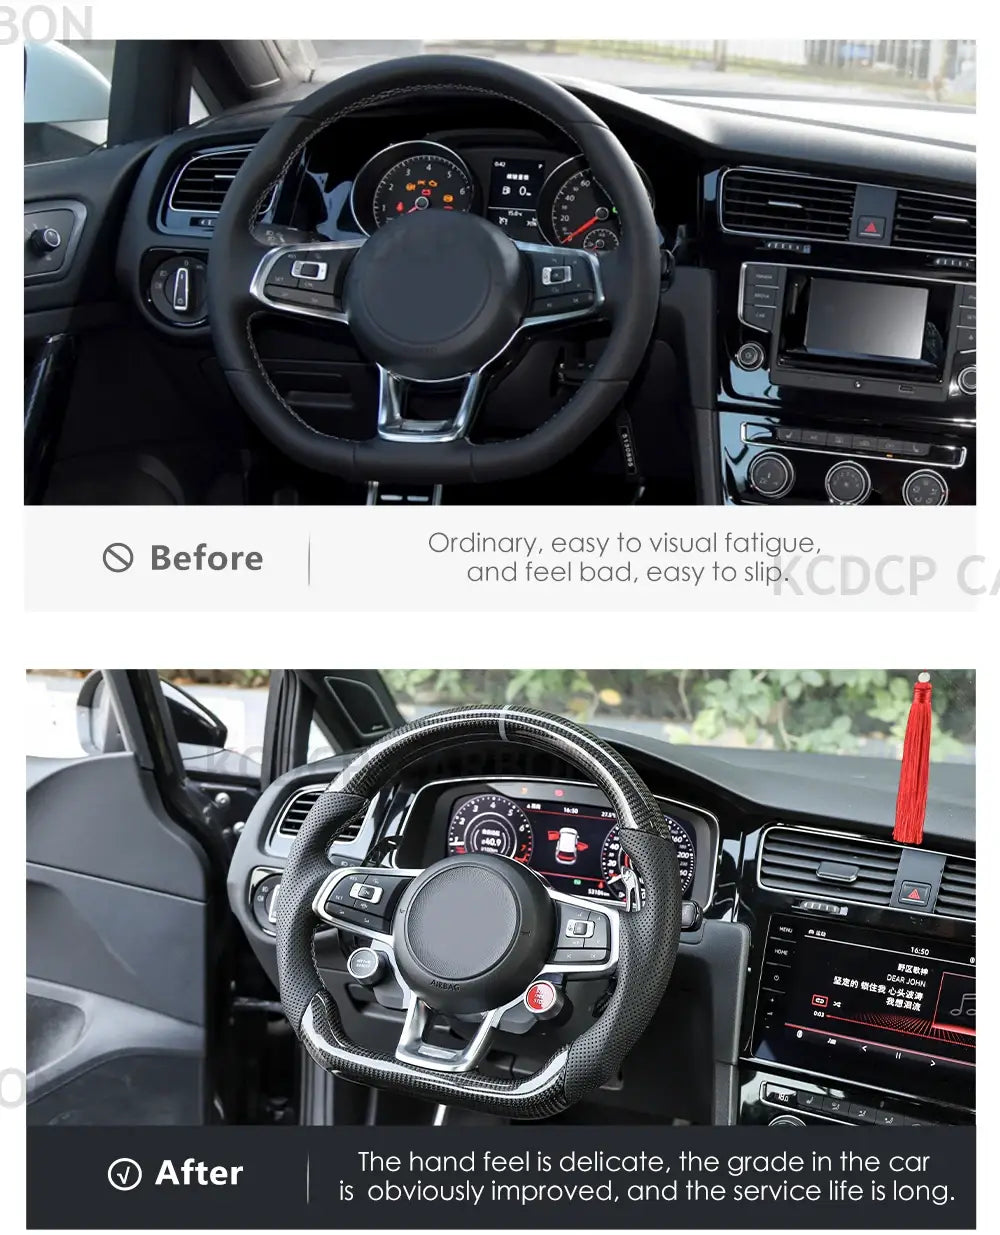 Custom Carbon Fiber Steering Wheel for Volkswagen GOLF MK7